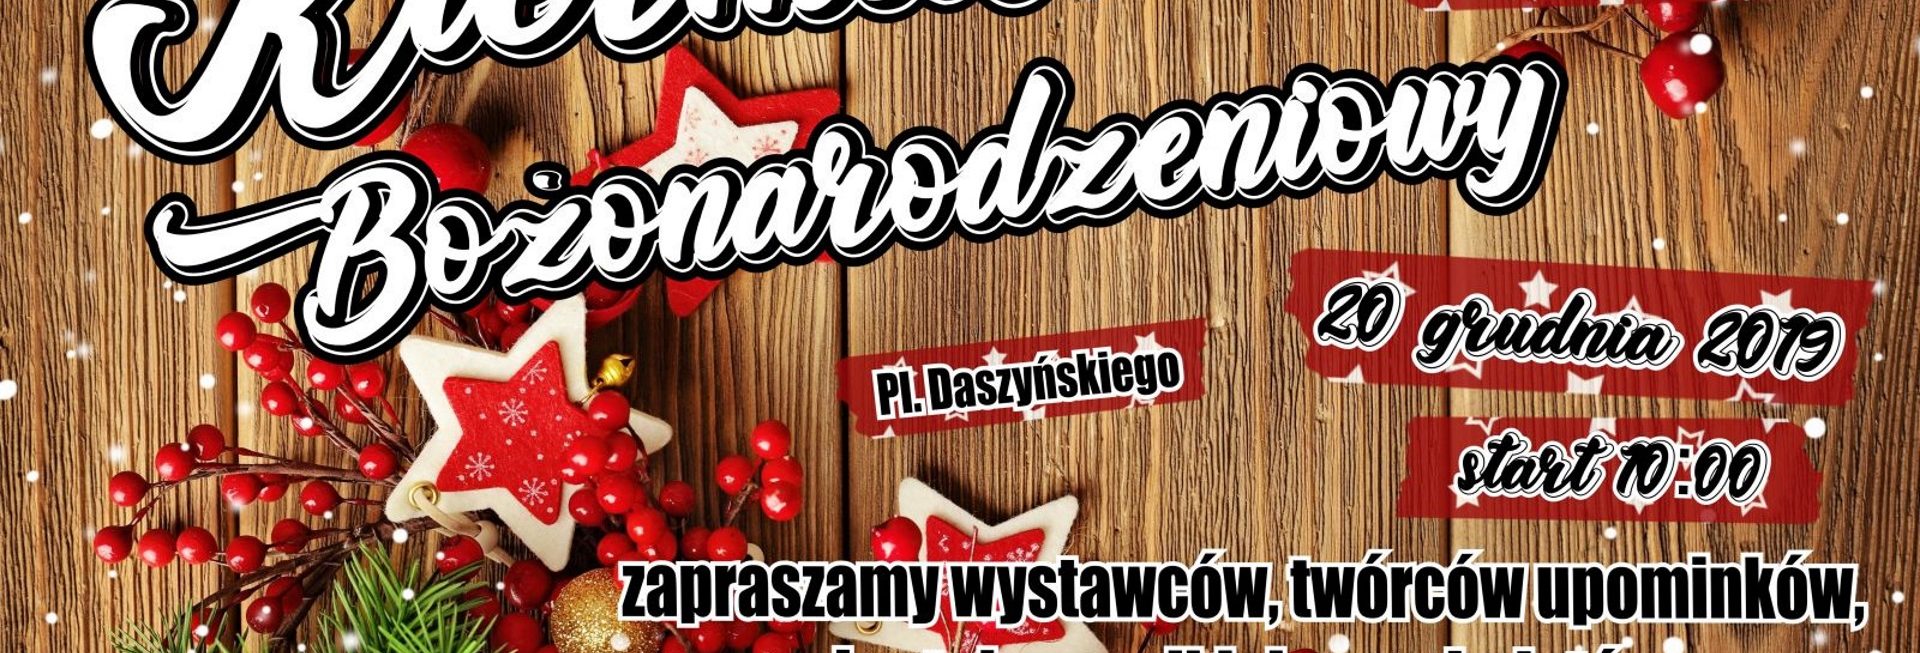 Zdjęcie - plakat graficzny zapraszający na Kiermasz Bożonarodzeniowy w Piszu. Plakat graficzny z informacjami i programem imprezy.  